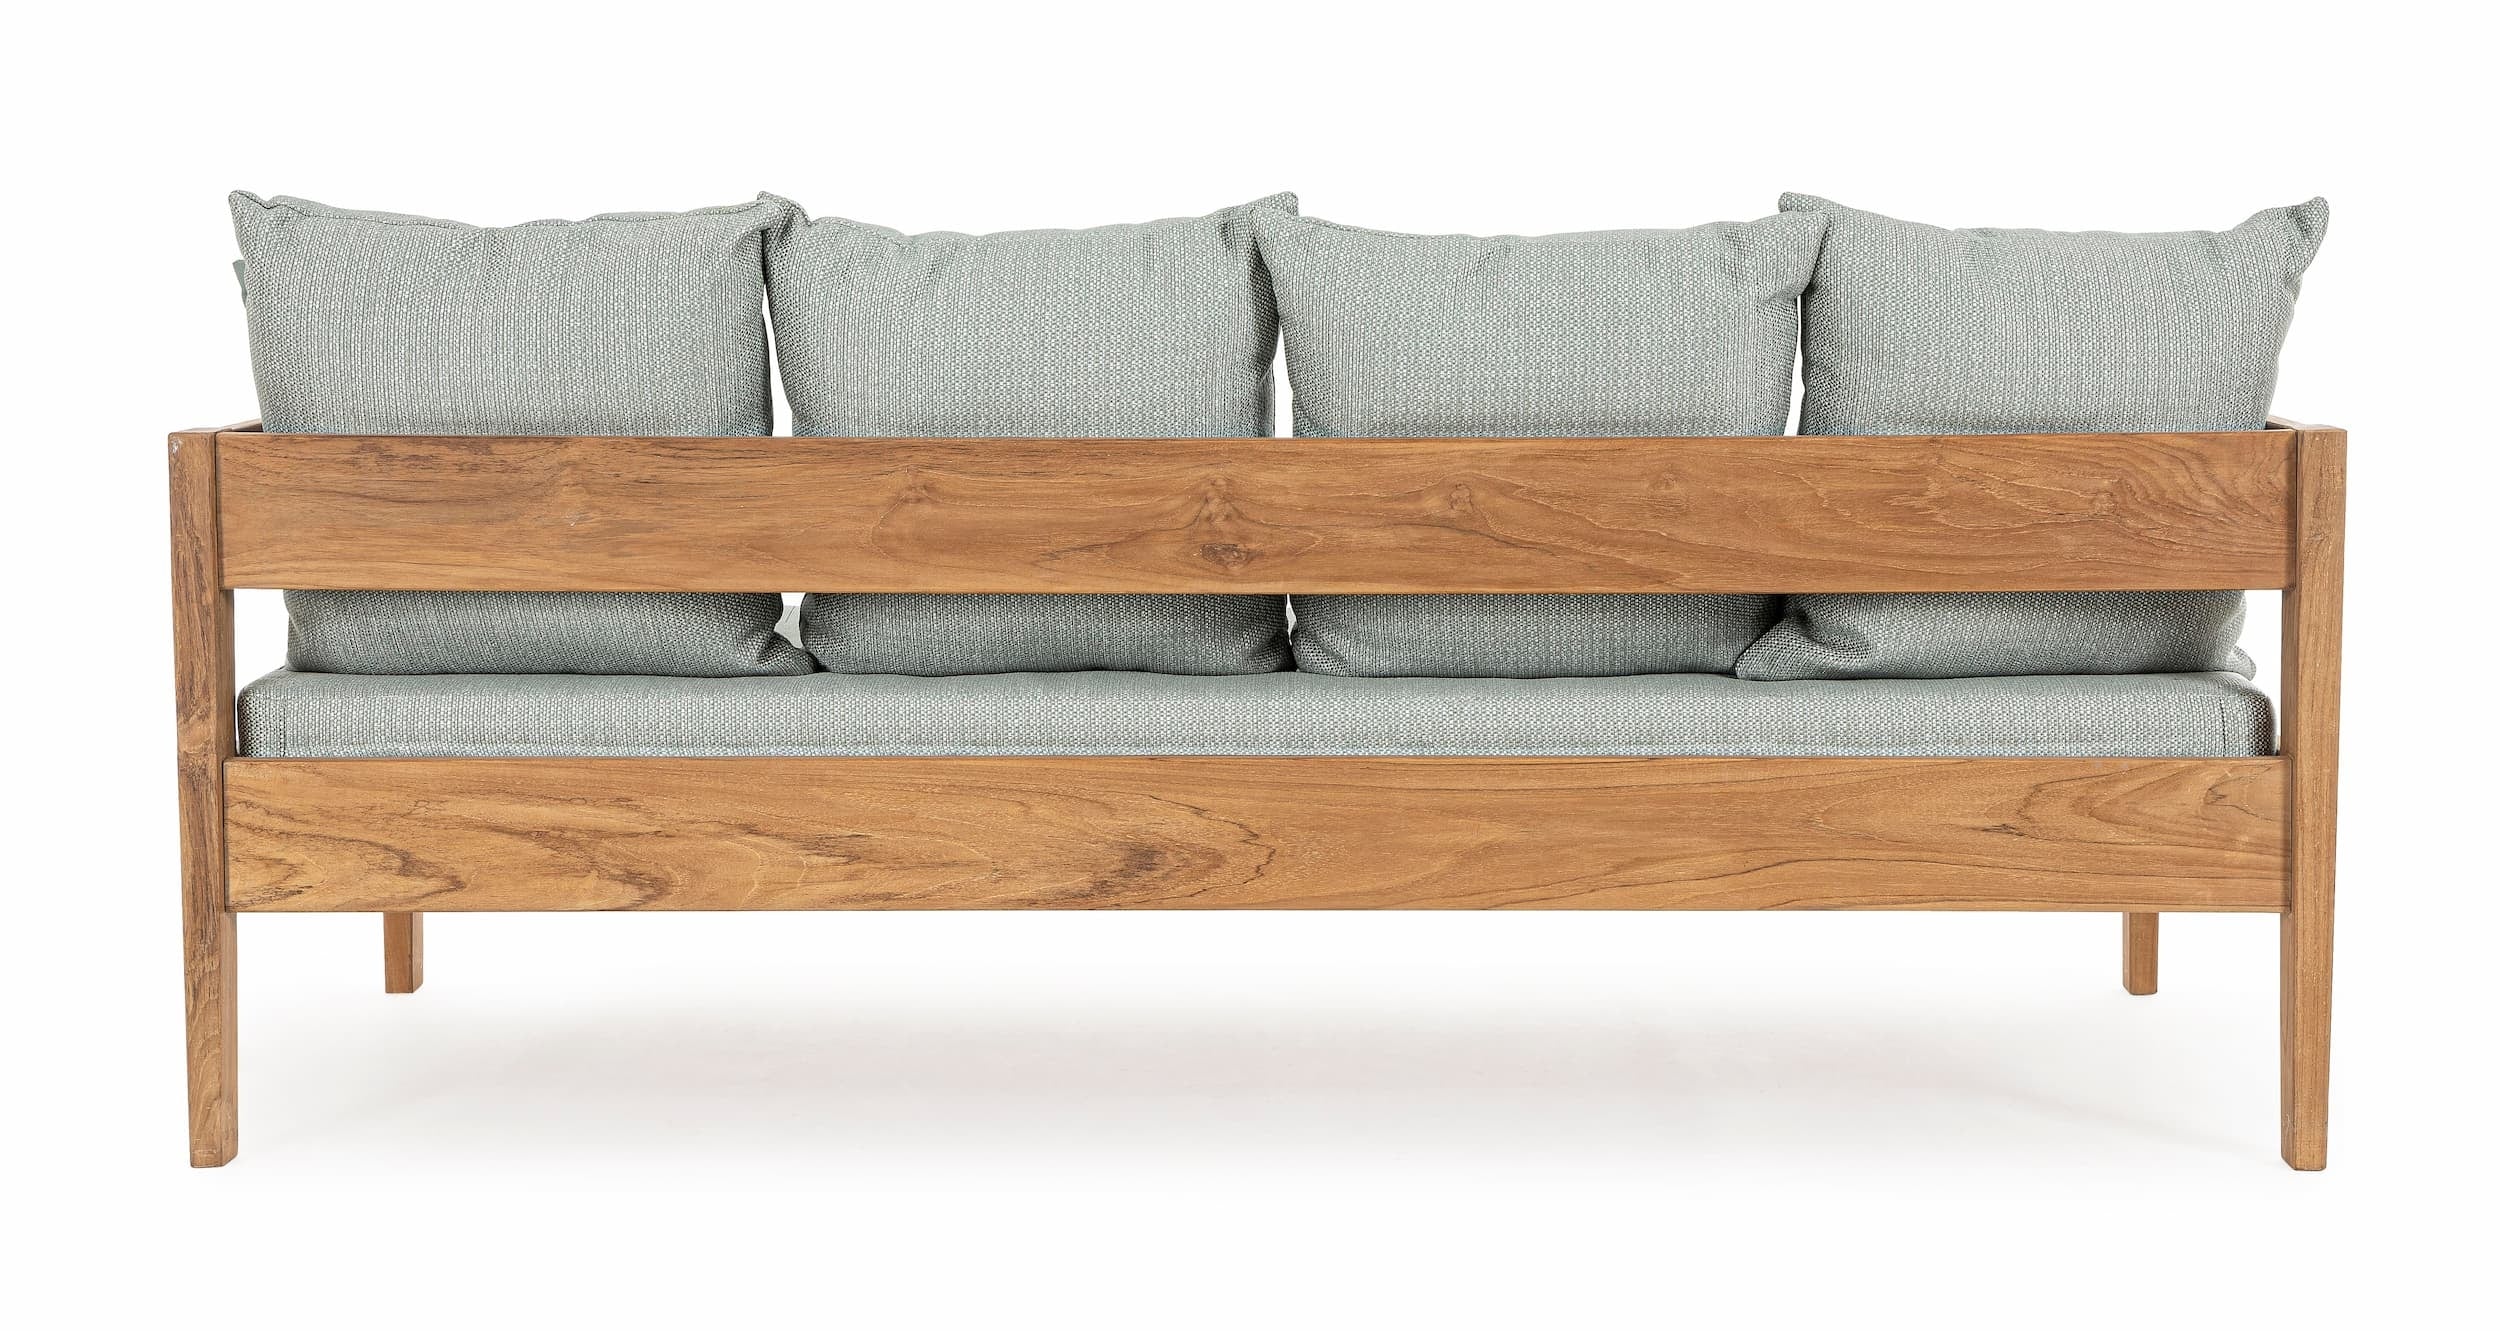 Bizzotto Canapea fixa pentru gradina / terasa, din lemn de tec, cu perne detasabile, 3 locuri, Kobo Bleu / Natural, l190xA90xH79 cm